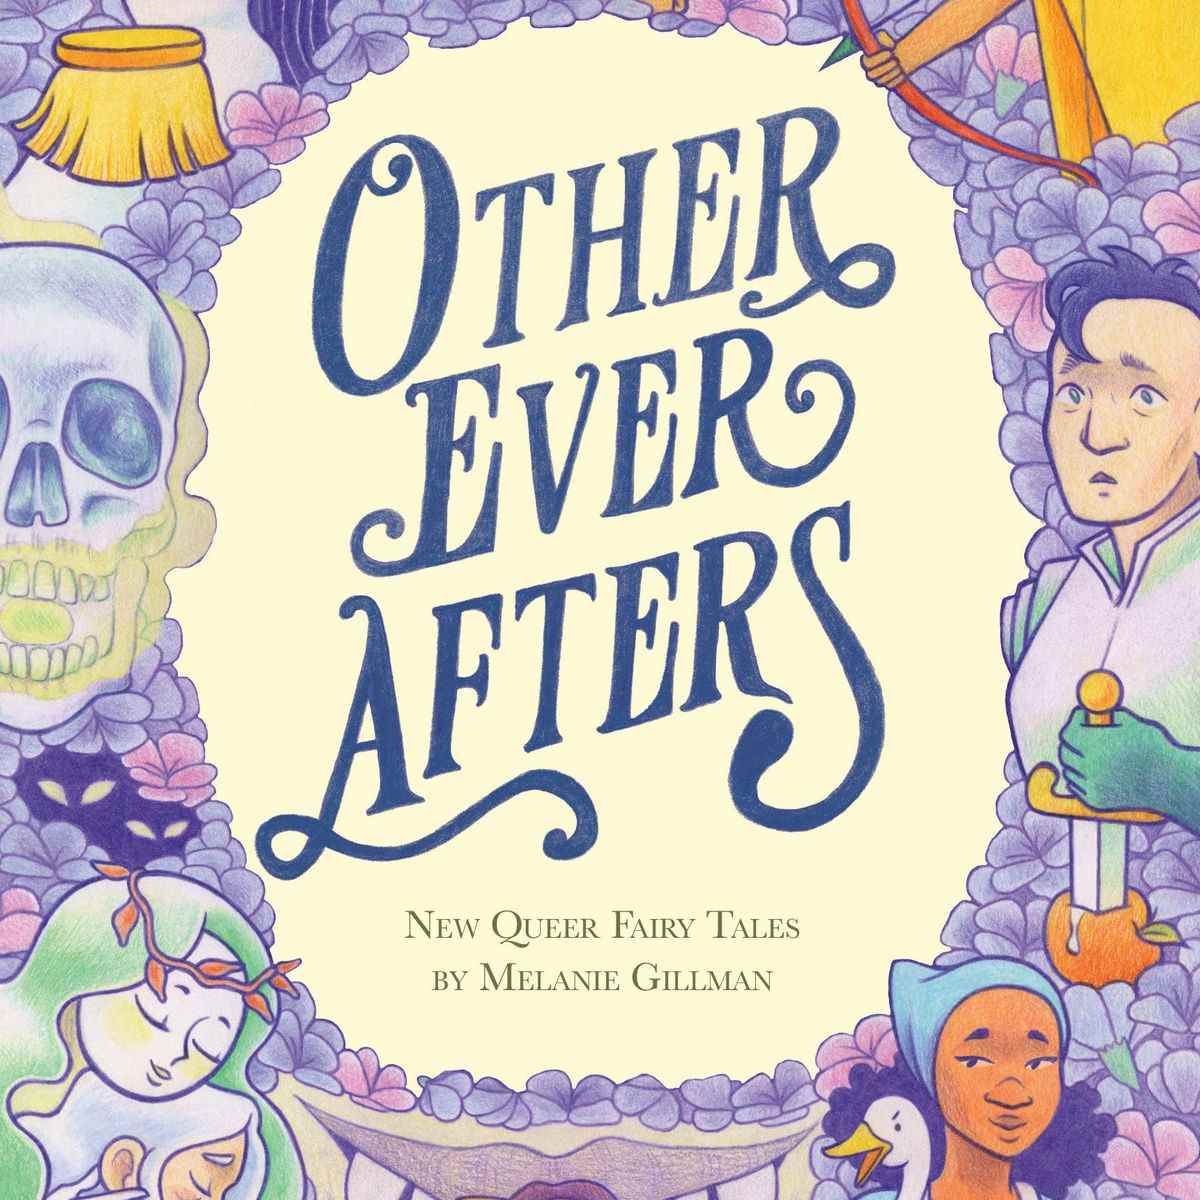 La couverture du livre Other Ever Afters de Melanie Gillman, avec une série de personnages de contes de fées dans un montage autour du titre